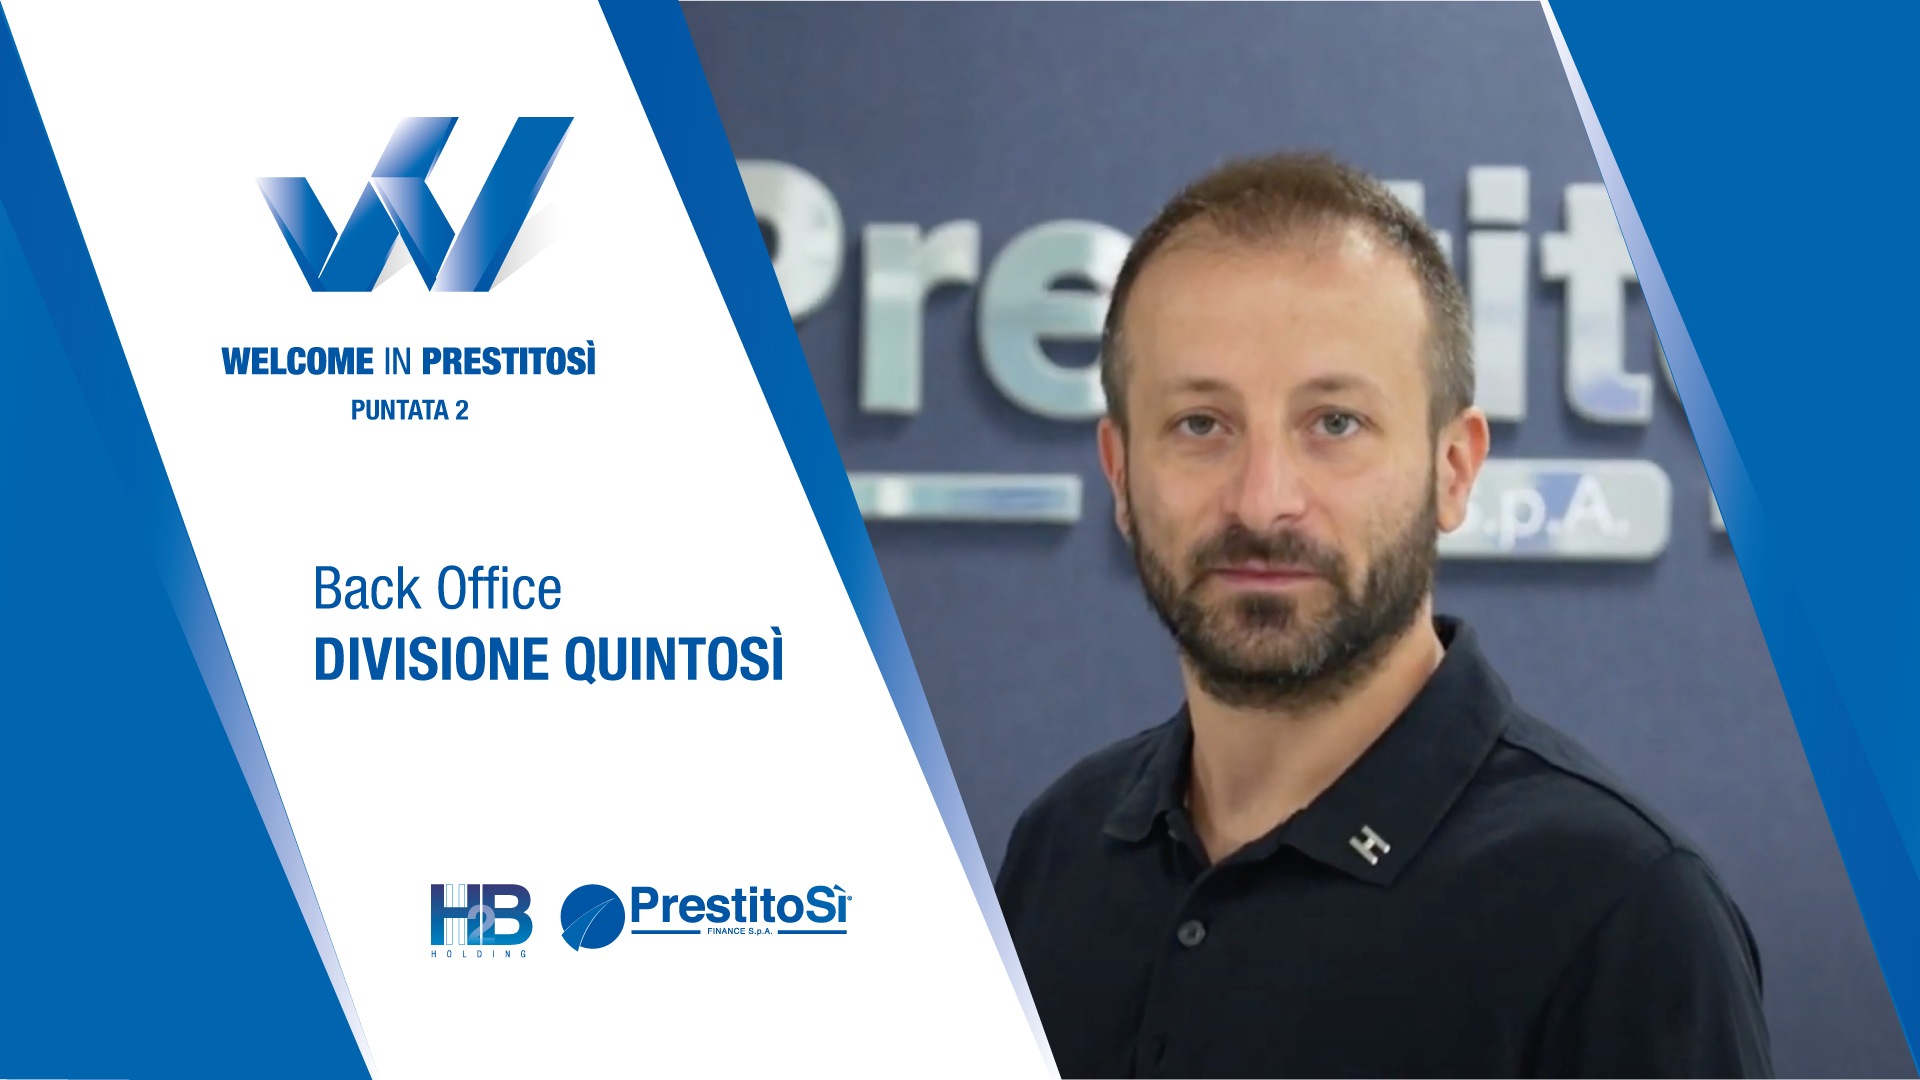 Welcome in PrestitoSì - Back Office Divisione QuintoSì